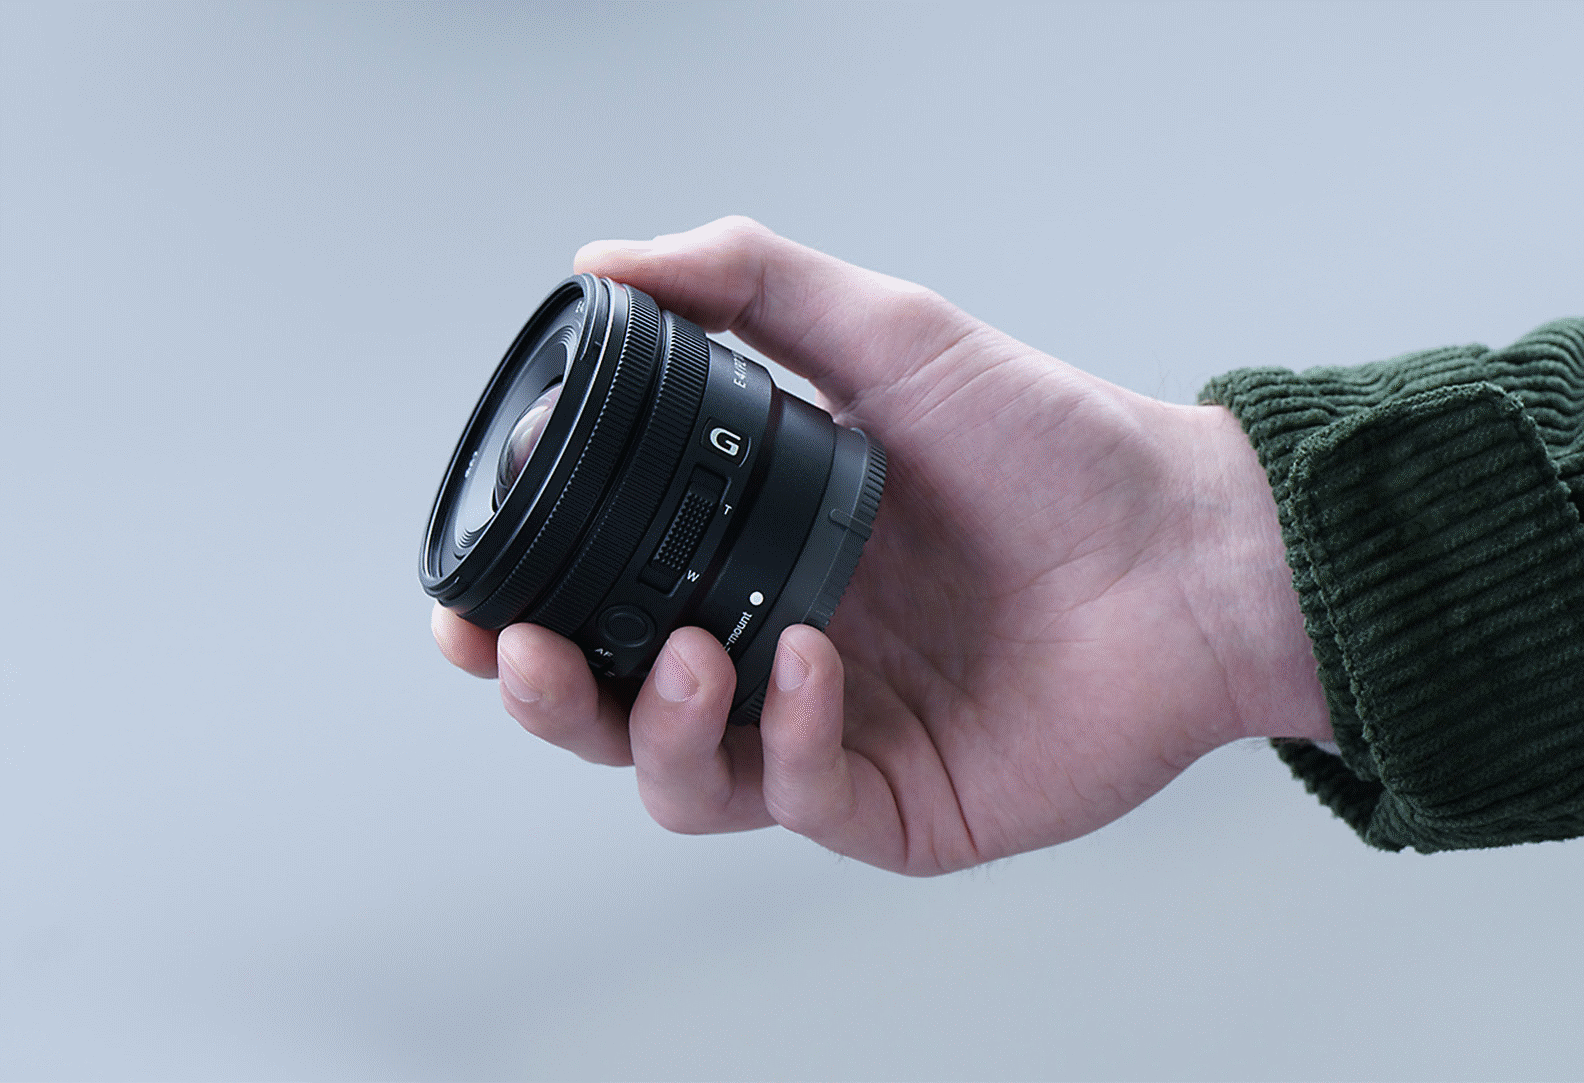 Lensin ele sığacak kadar küçük olduğunu göstermek için E PZ 10-20 mm F4 G'yi tutan bir kişinin elinin görüntüsü